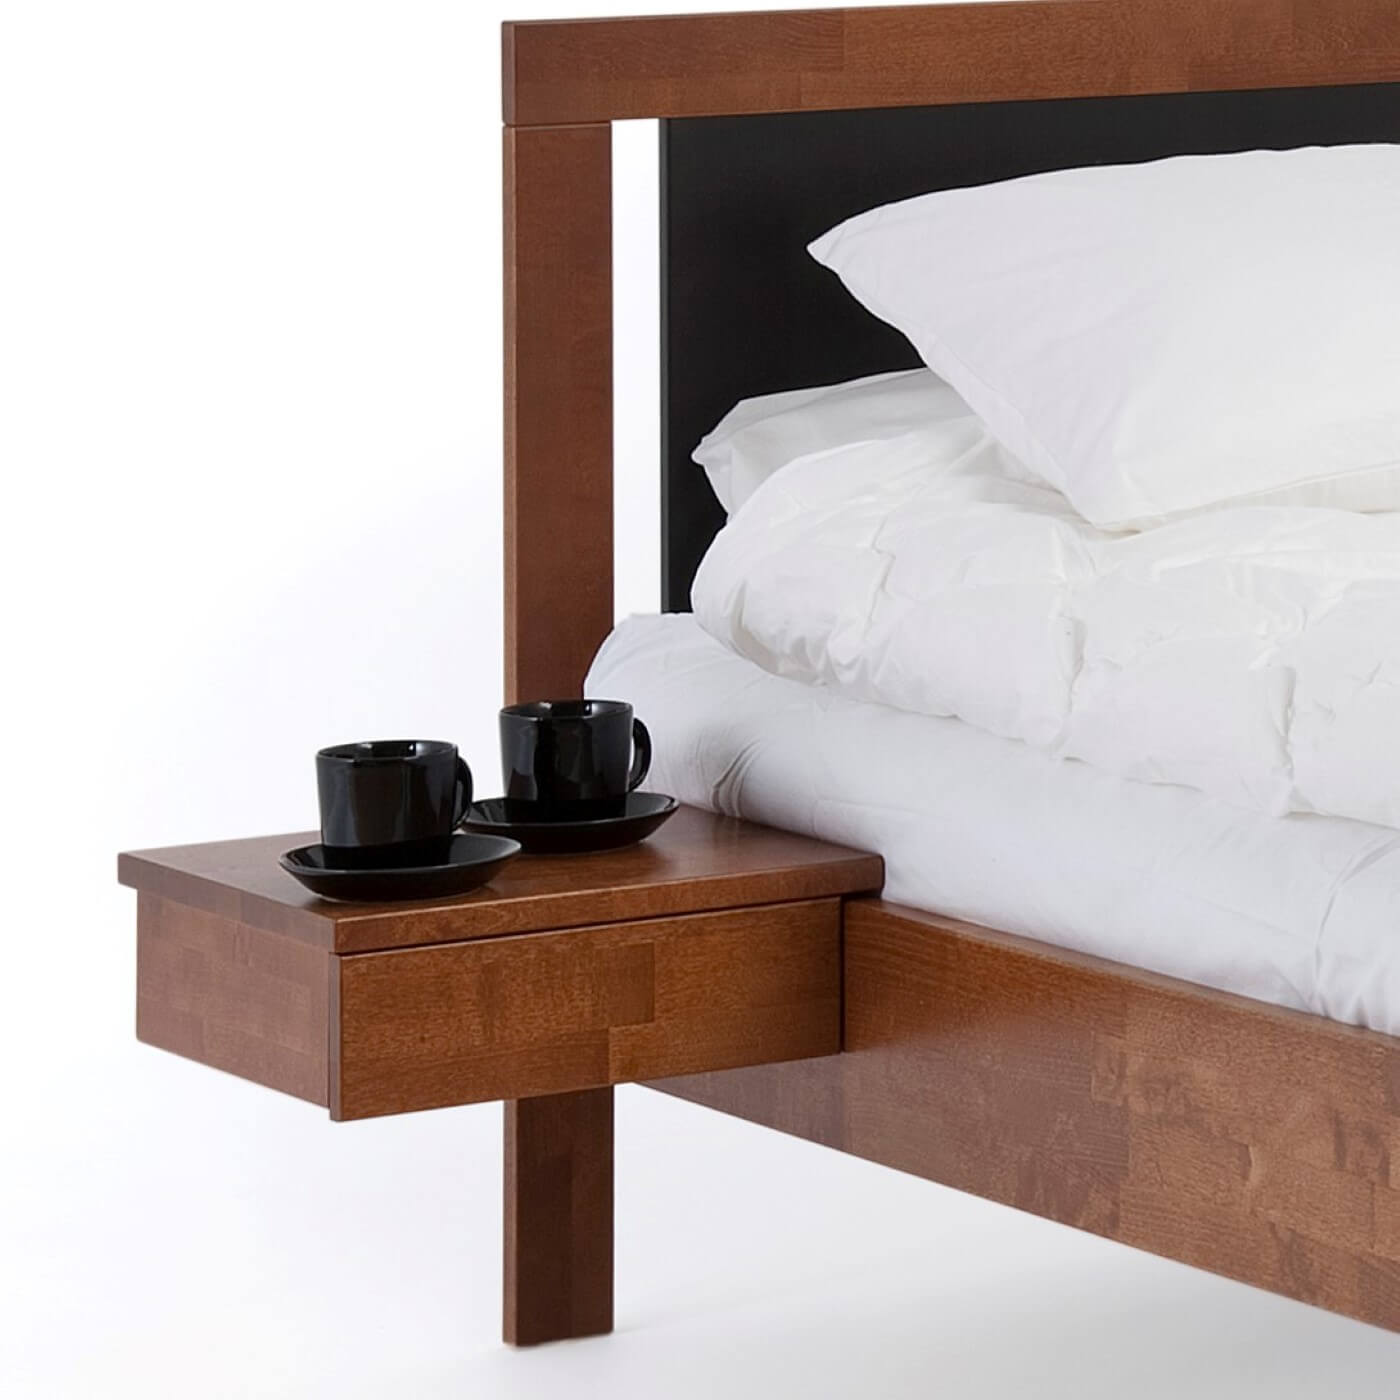 Stolik nocny orzech KOLI drewniany z jedną szufladą. Na stoliku wiszącym przy łóżku stoją 2 czarne filiżanki. Design z północy